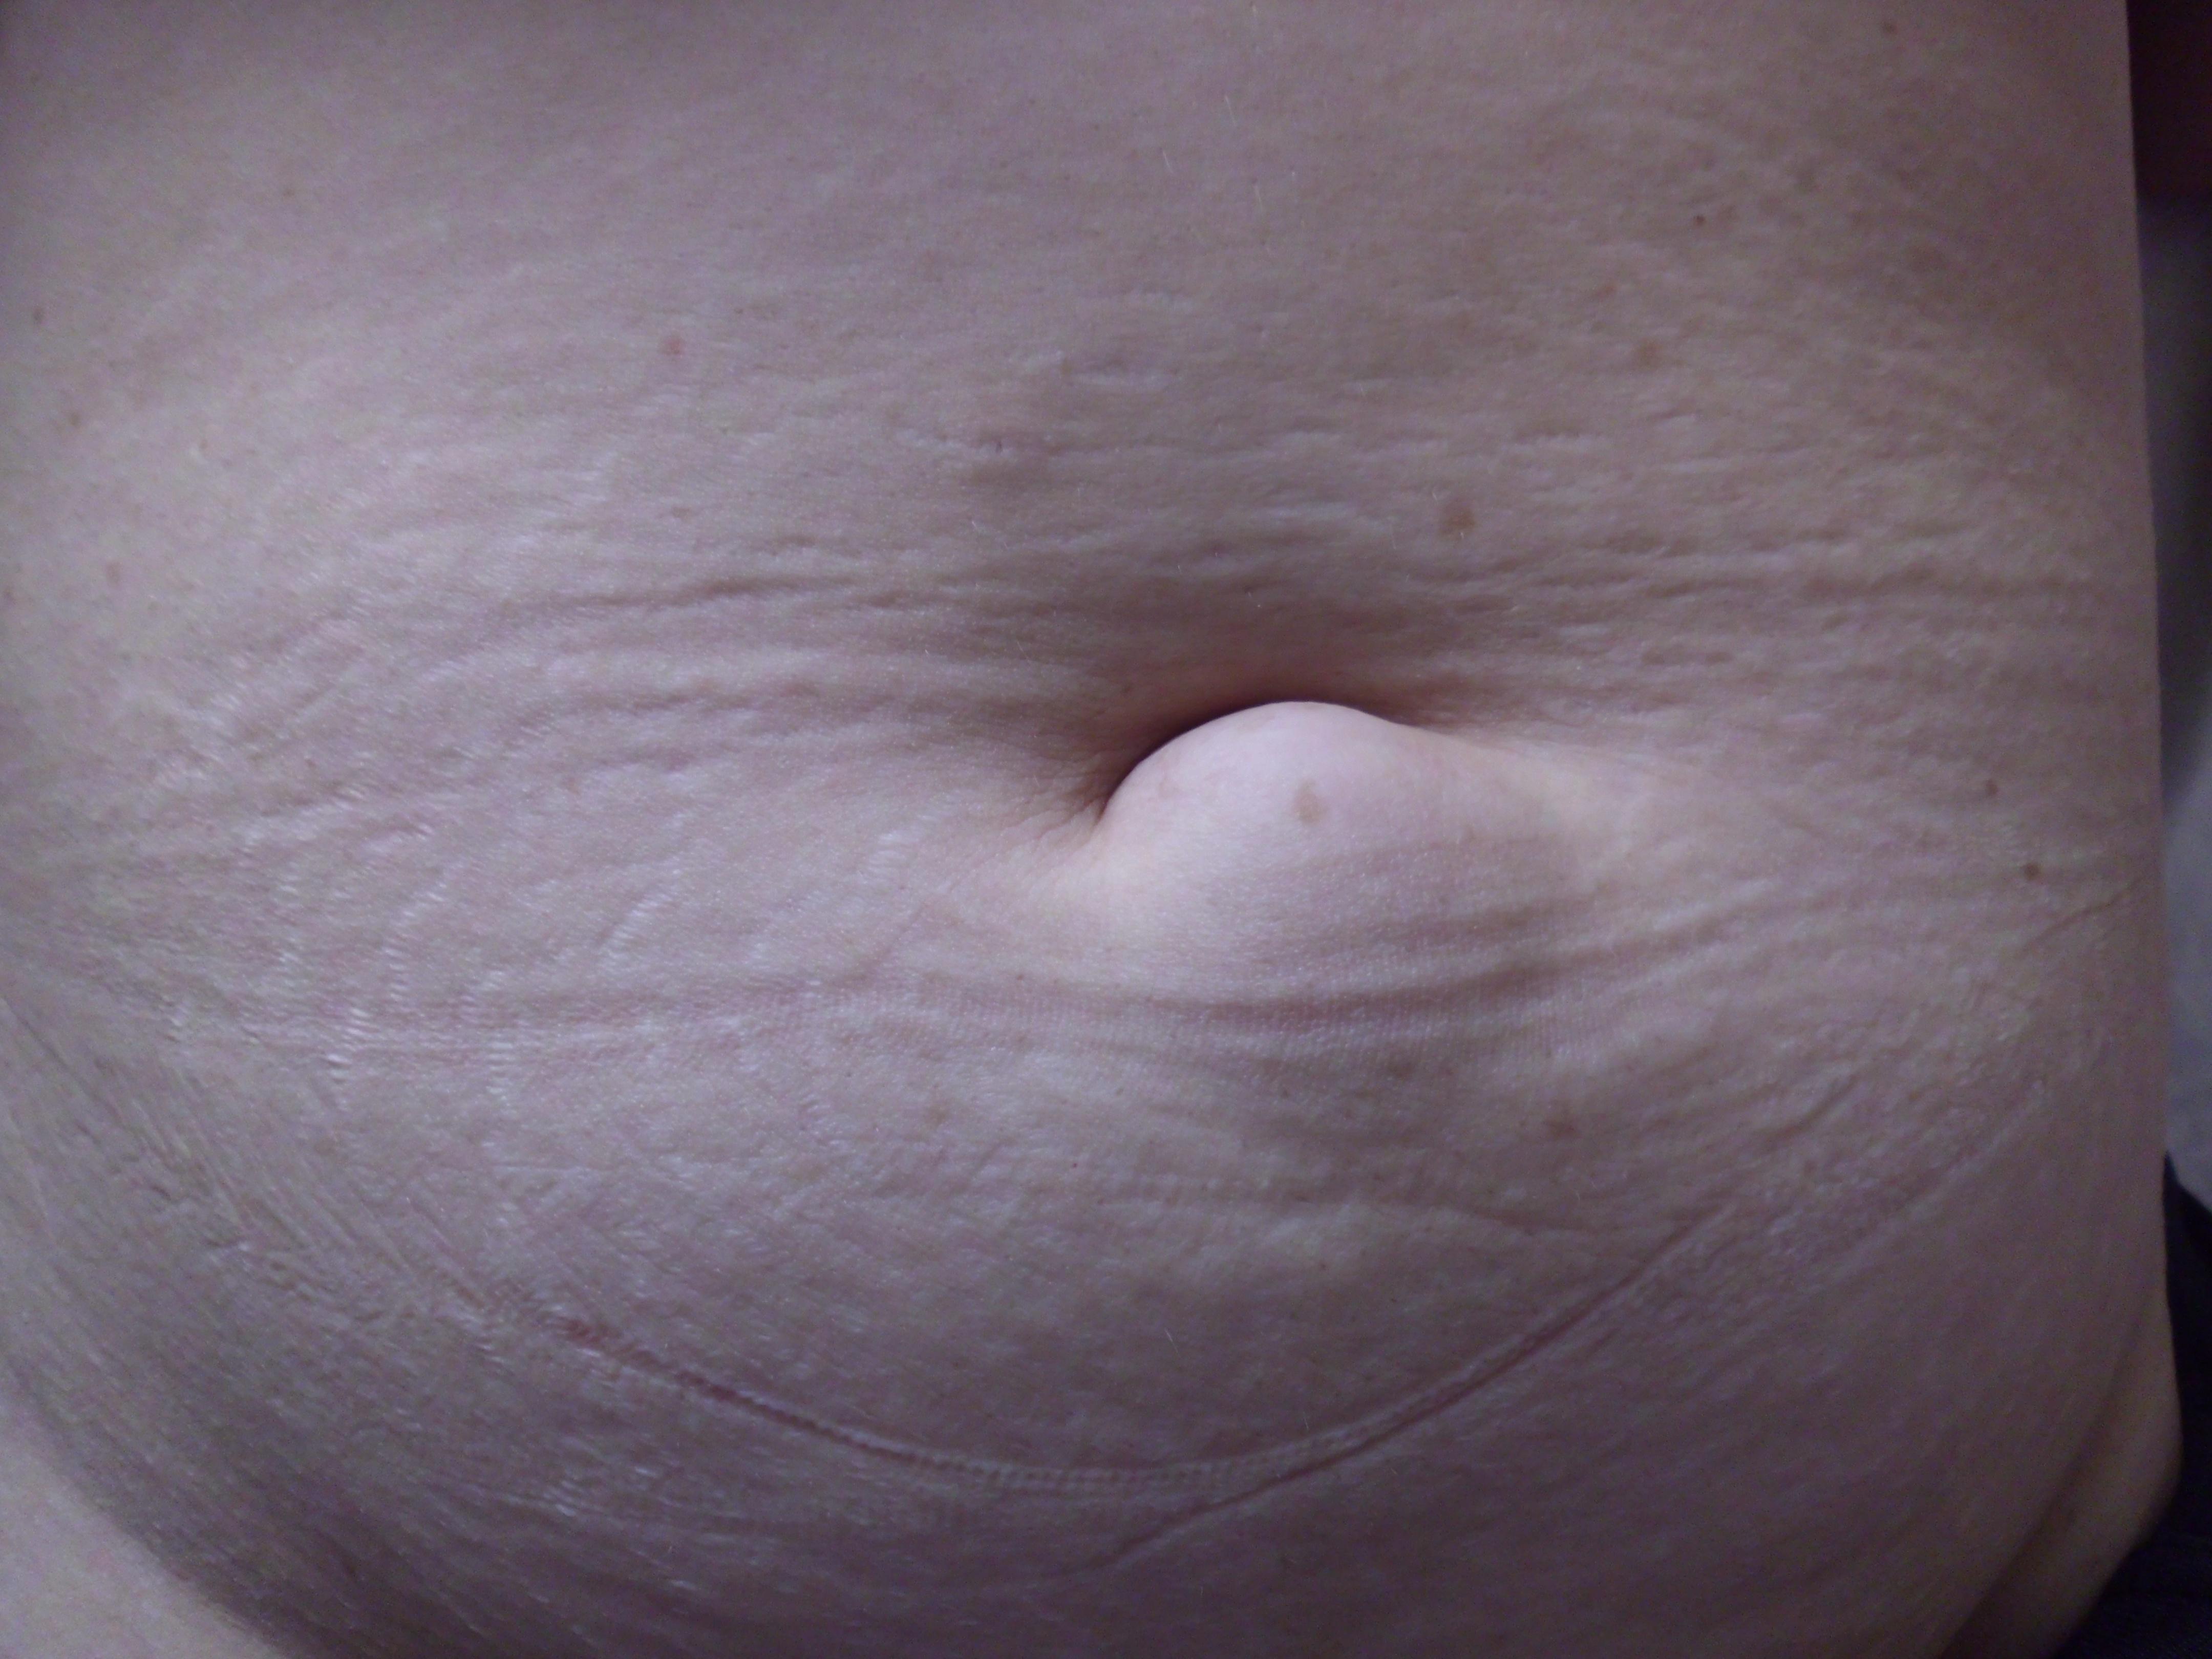 去外院检查超声提示皮下脂肪瘤  现在包块较以前逐渐增大且用力挤压也